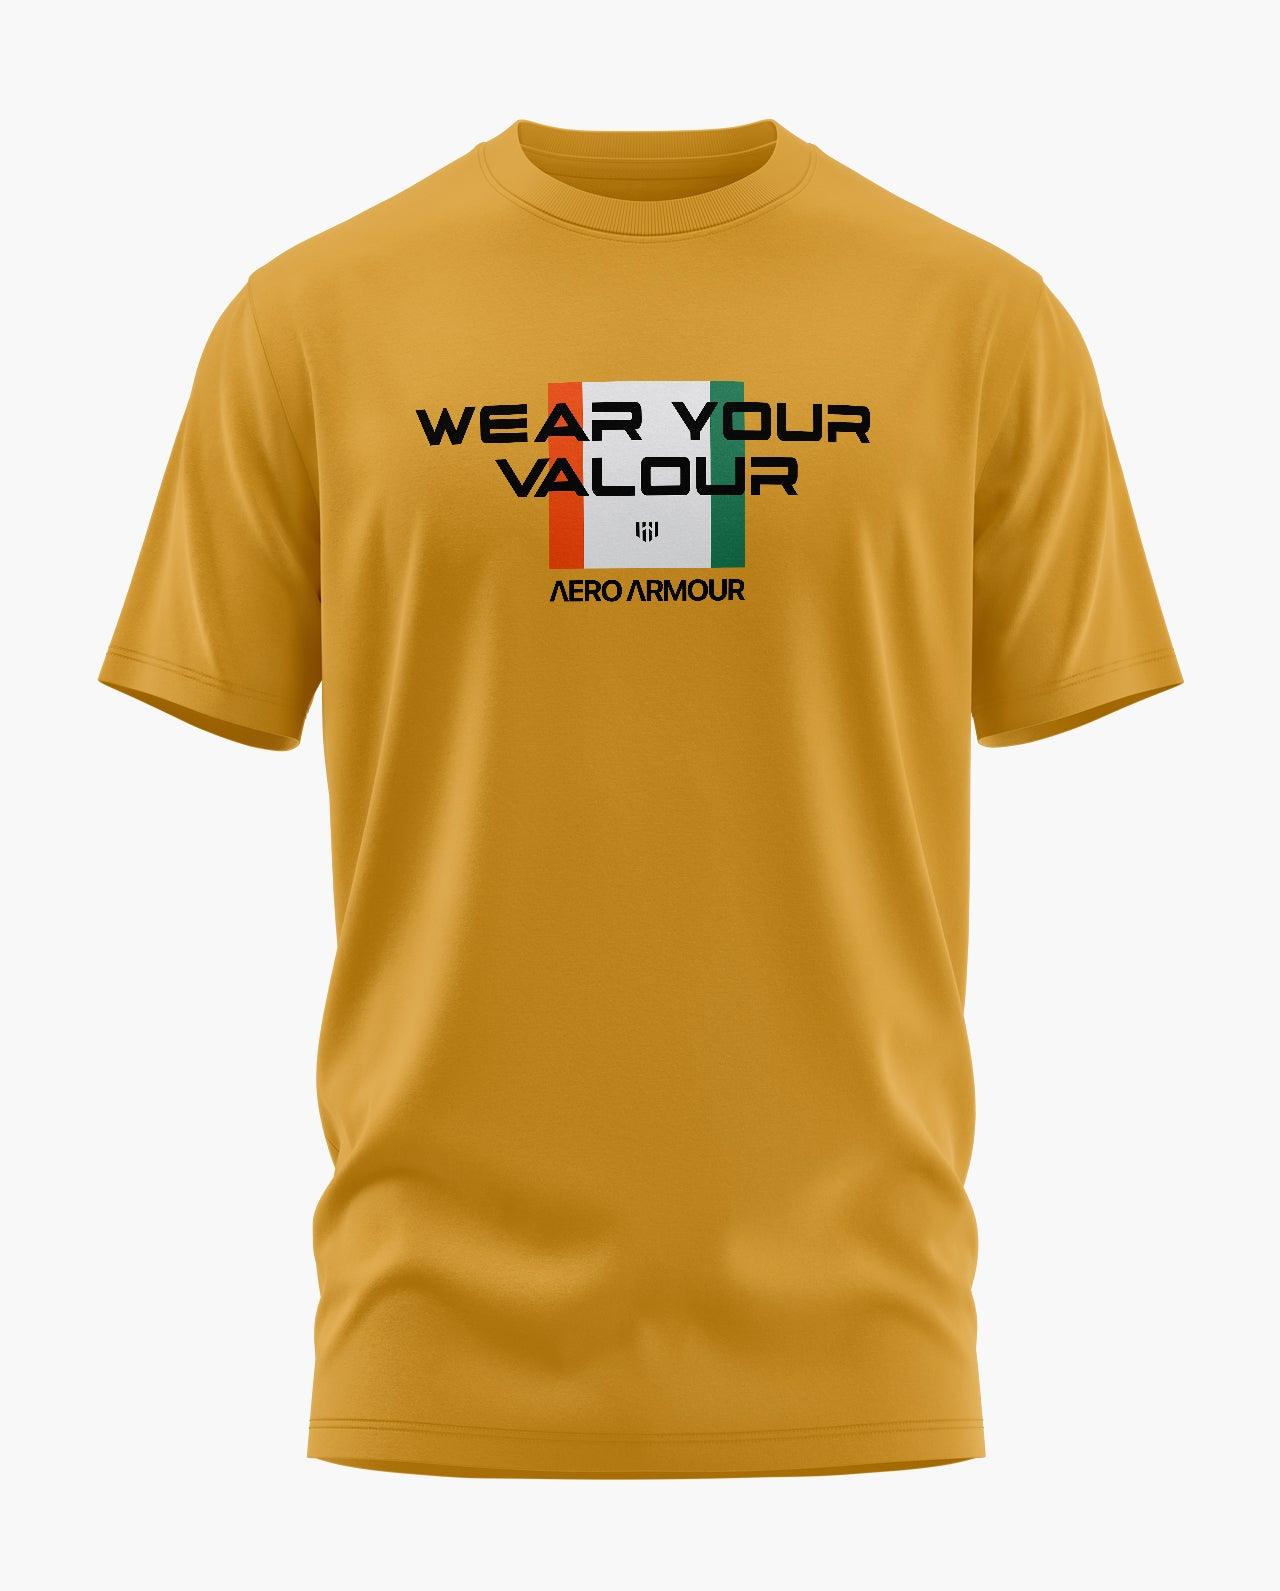 VALOUR INDIA T-Shirt - Aero Armour